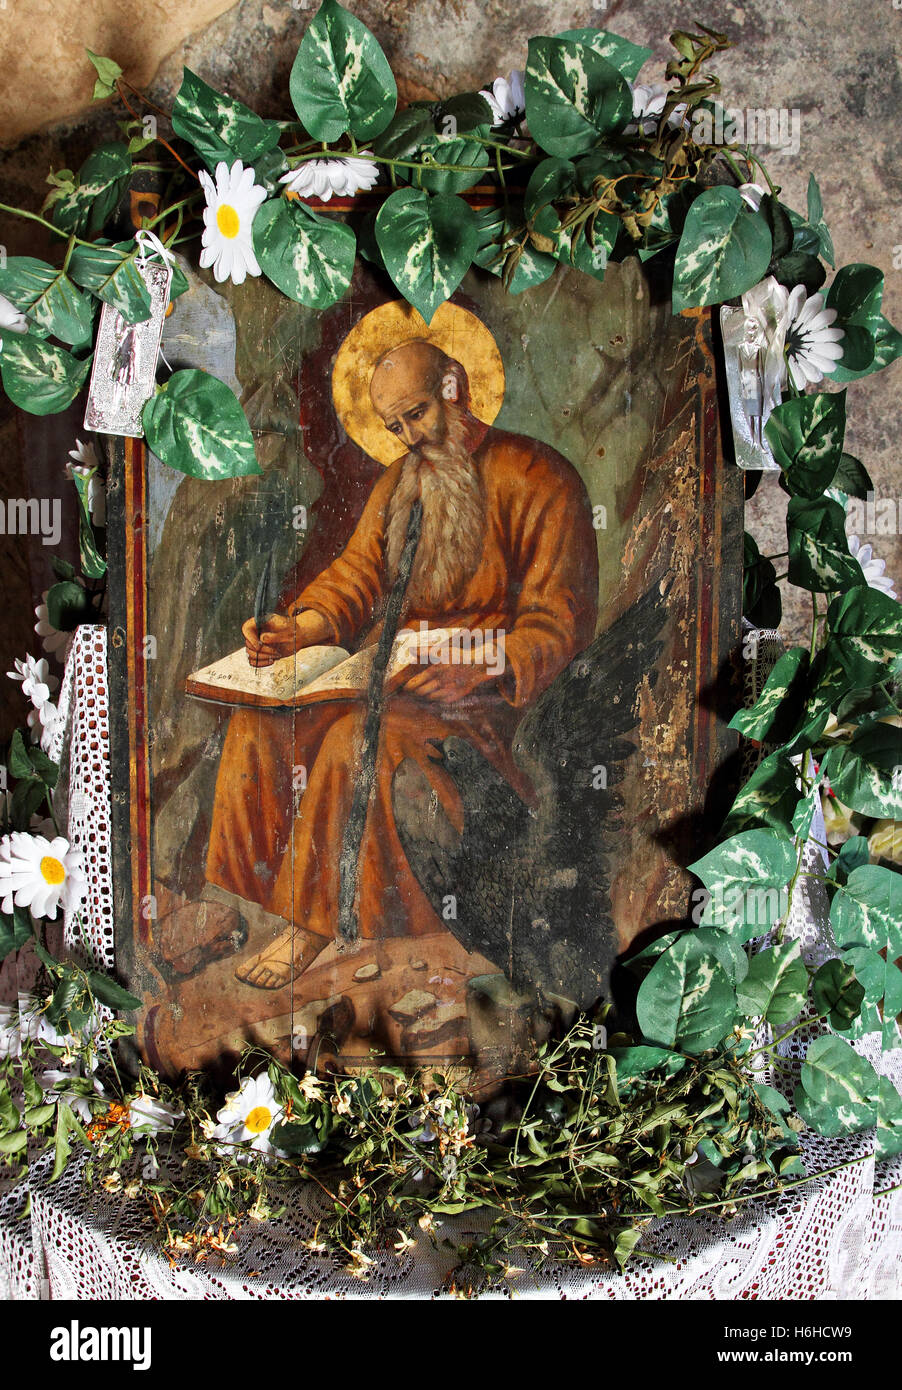 Icona di Giovanni Evangelista, secondo lo spirito culturale dell'Orientale (Greco) Chiesa Ortodossa. L'icona è visibile in creta. Foto Stock